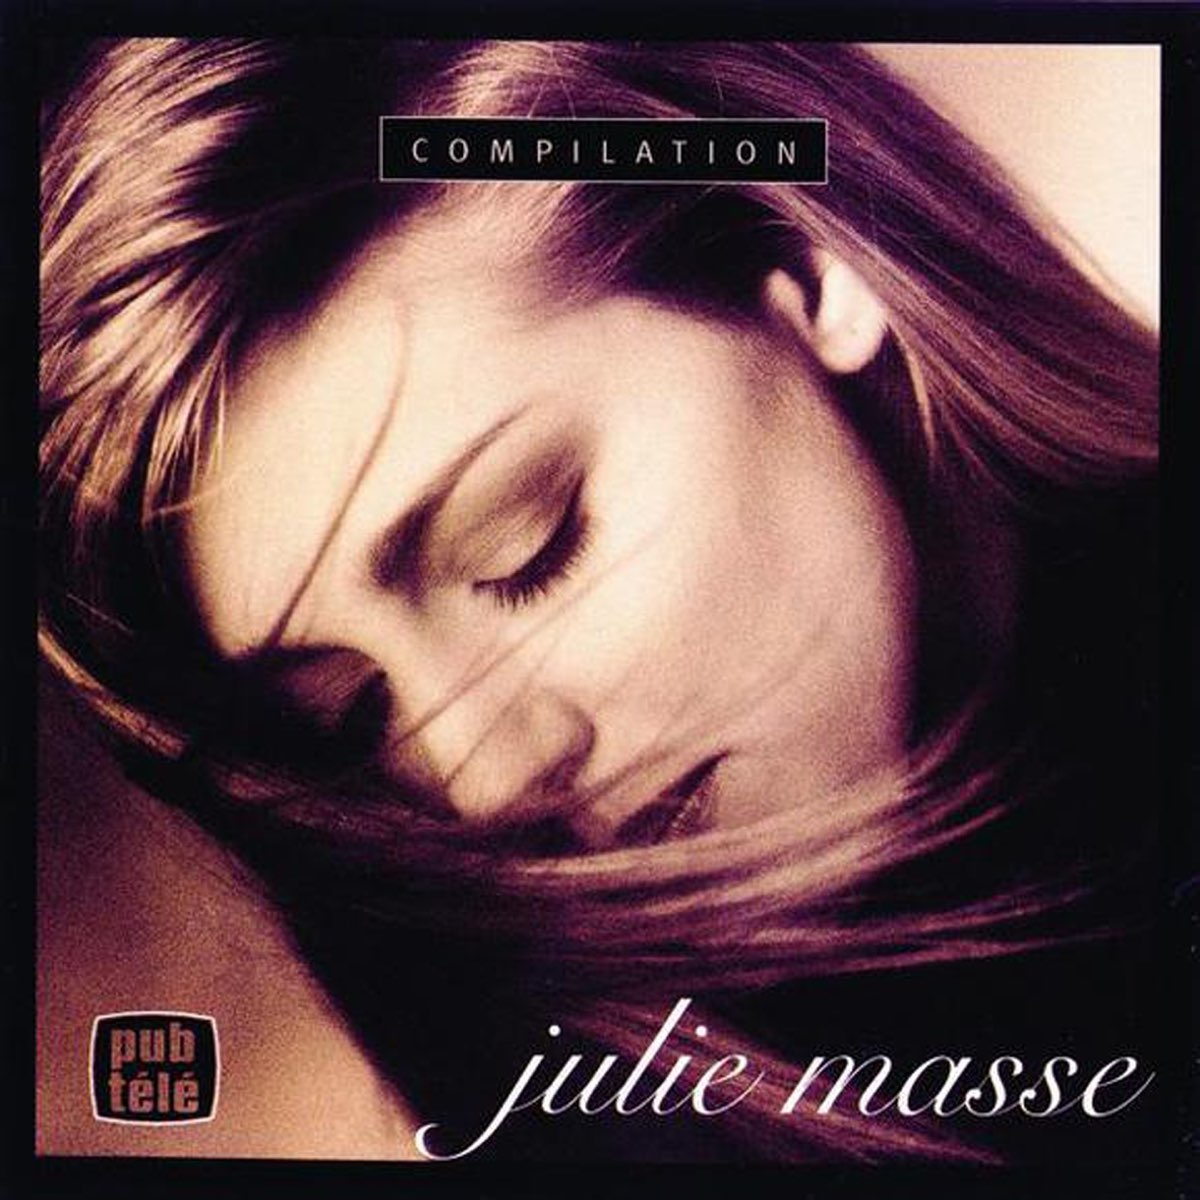 ‎Julie Masse Compilation by Julie Masse on Apple Music